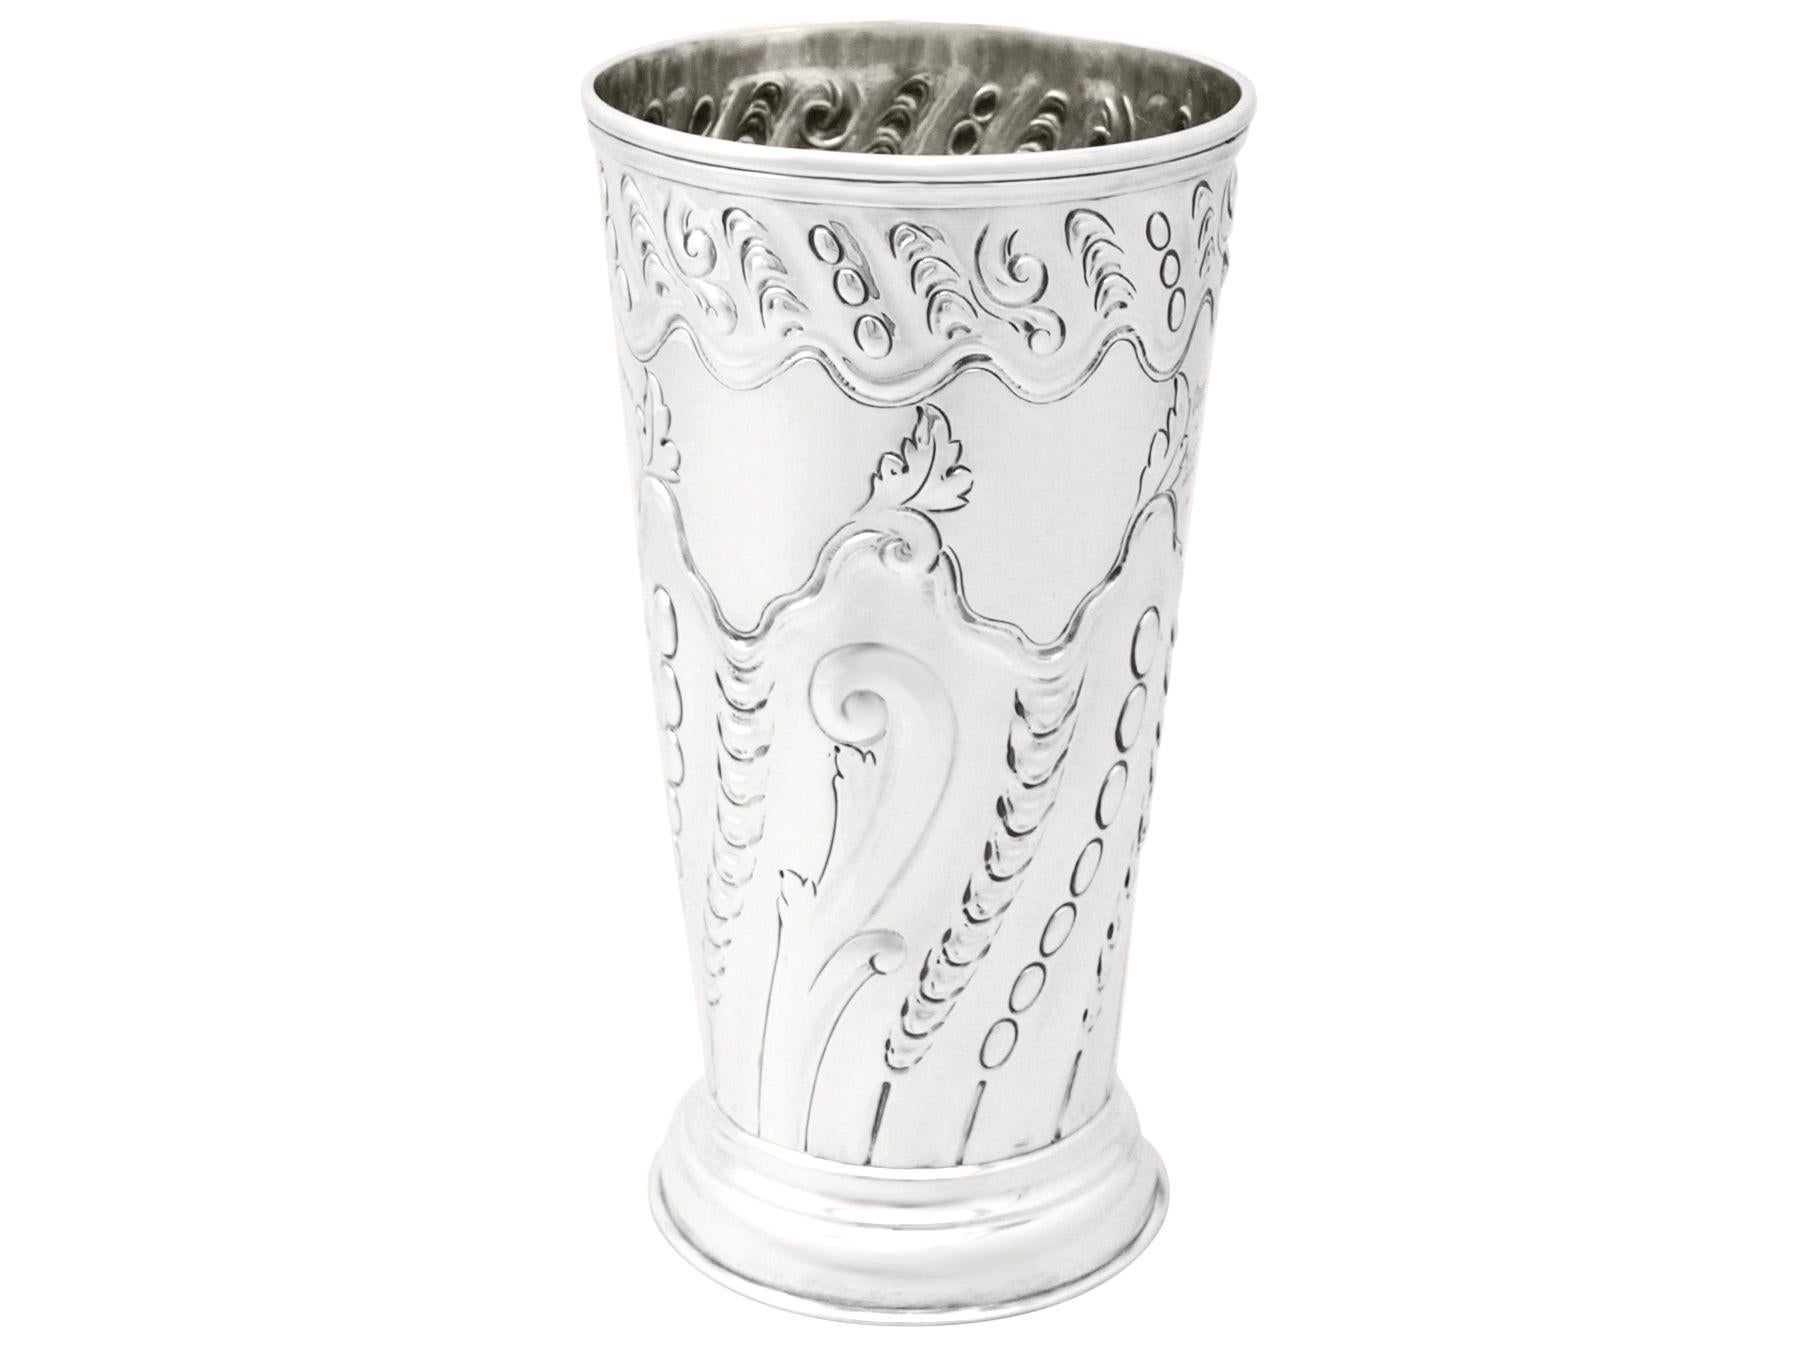 Eine feine und beeindruckende antike viktorianische englische Vase aus Sterlingsilber mit militärischem Interesse (Durham Light Infantry); eine Ergänzung zu unserer Sammlung von Ziersilberwaren.

Diese feine antike viktorianische Vase aus